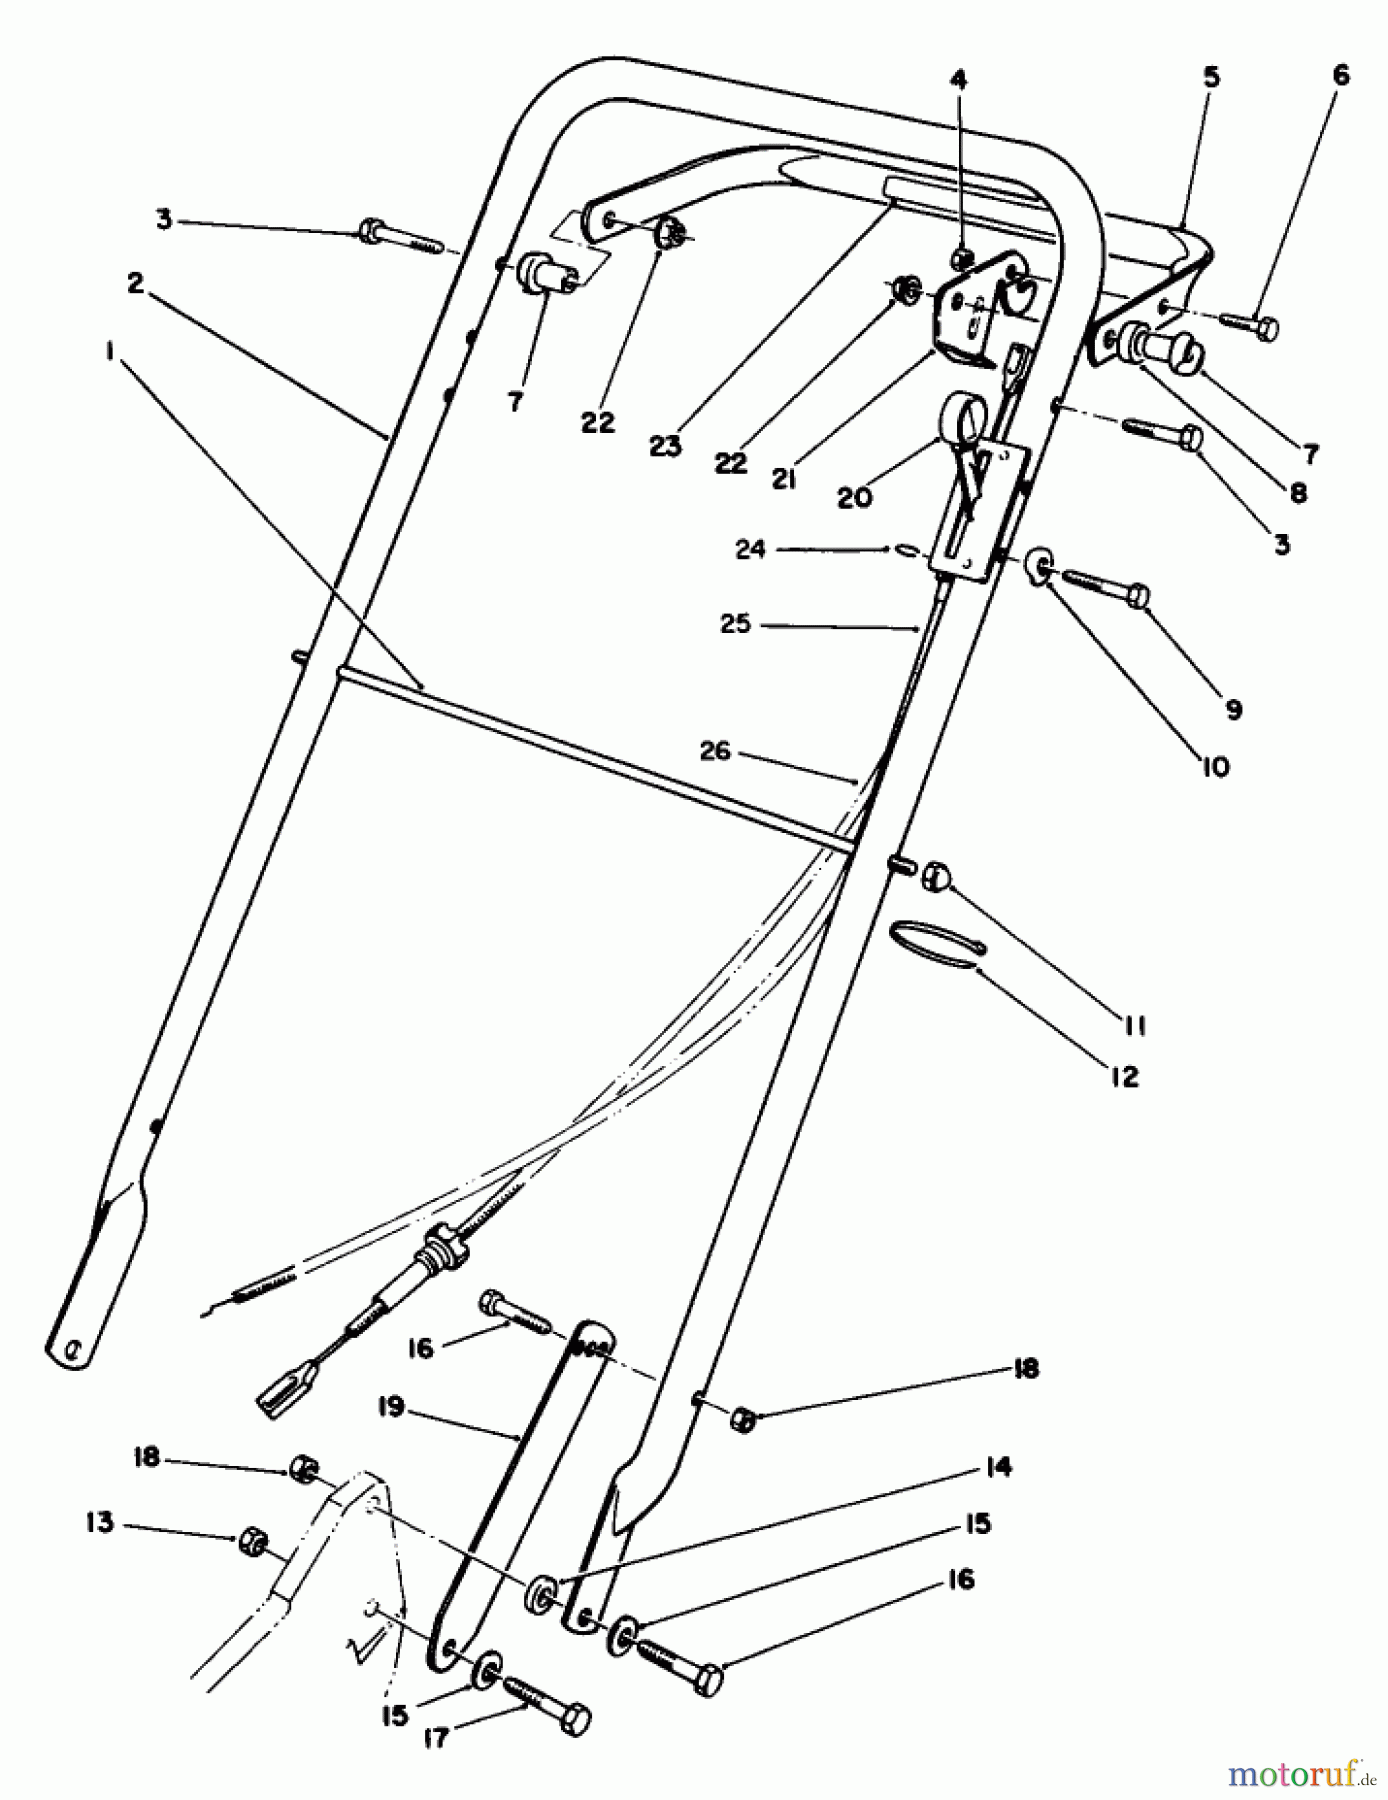  Toro Neu Mowers, Walk-Behind Seite 2 22030 - Toro Lawnmower, 1991 (1000001-1999999) HANDLE ASSEMBLY (MODEL 22035)